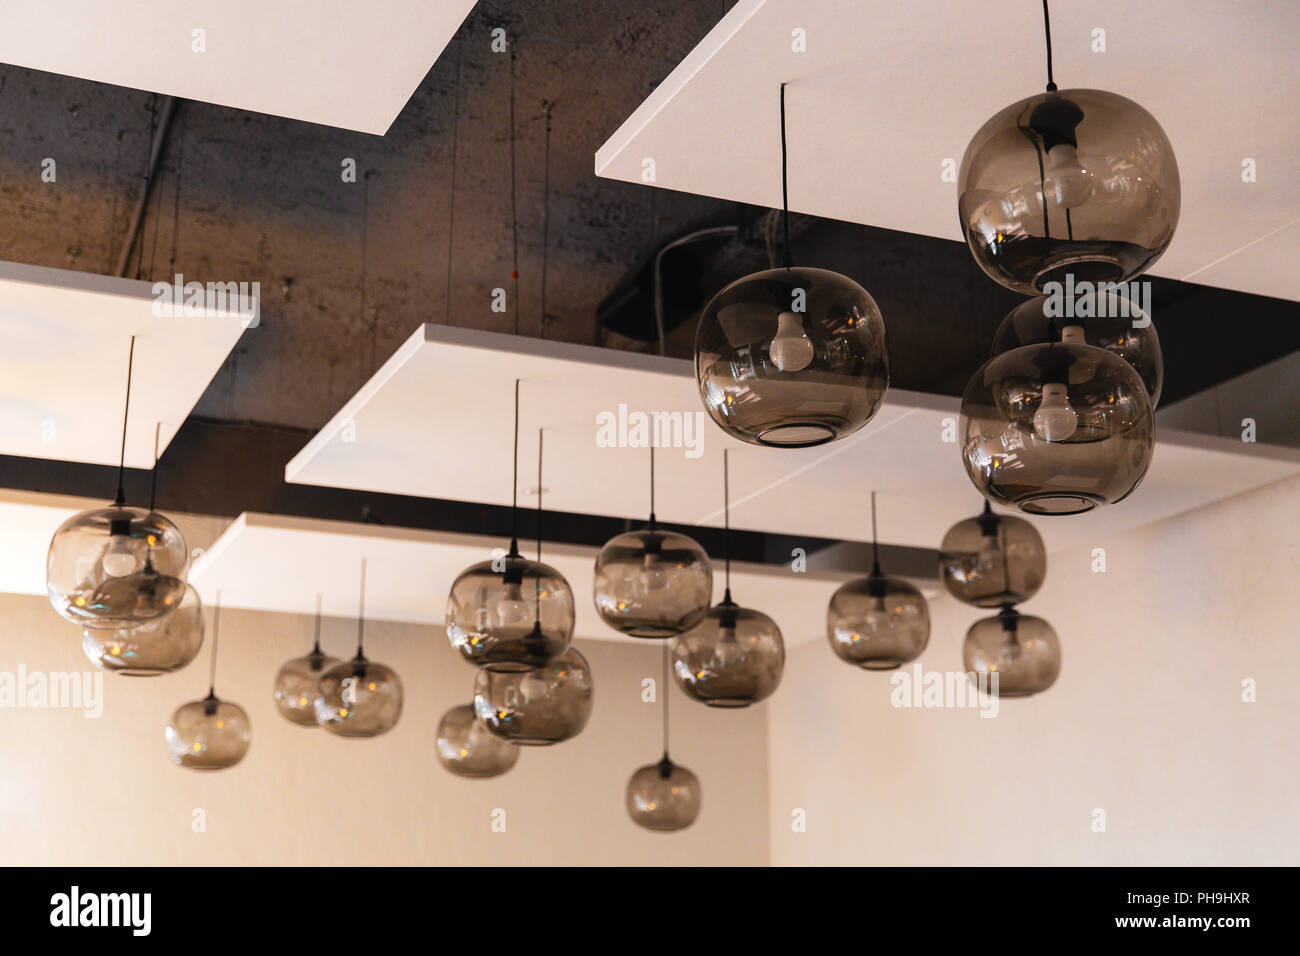 Globus gläserne Decke hängende Lampen in der Hotellobby Stockfotografie -  Alamy